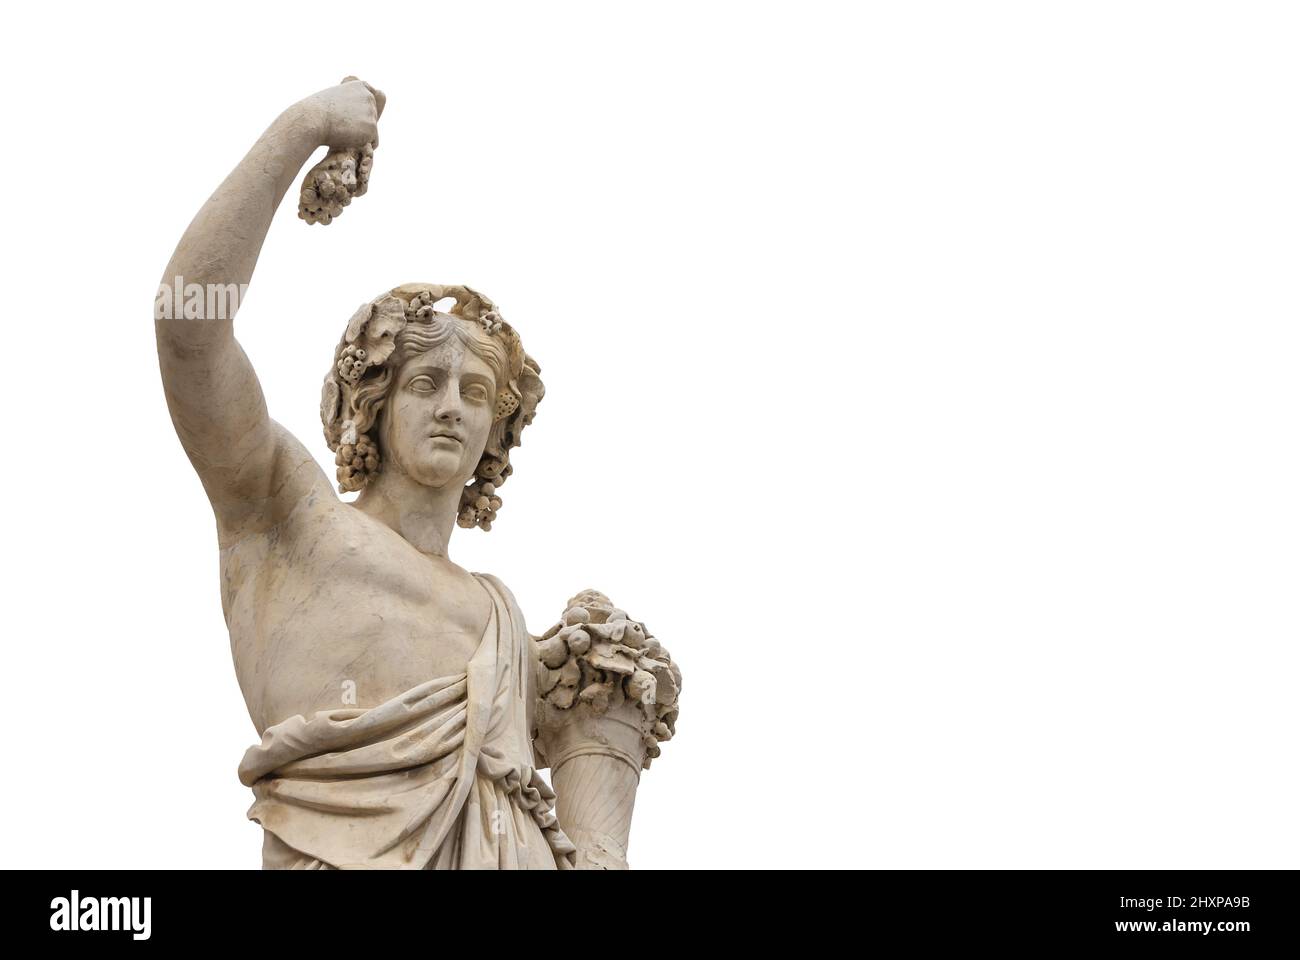 Heidentum in der Antike. Der römische oder griechische gott Bacchus, der Trauben hält, eine neoklassische Marmorstatue, die im 19.. Jahrhundert im historischen Zentrum Roms errichtet wurde Stockfoto